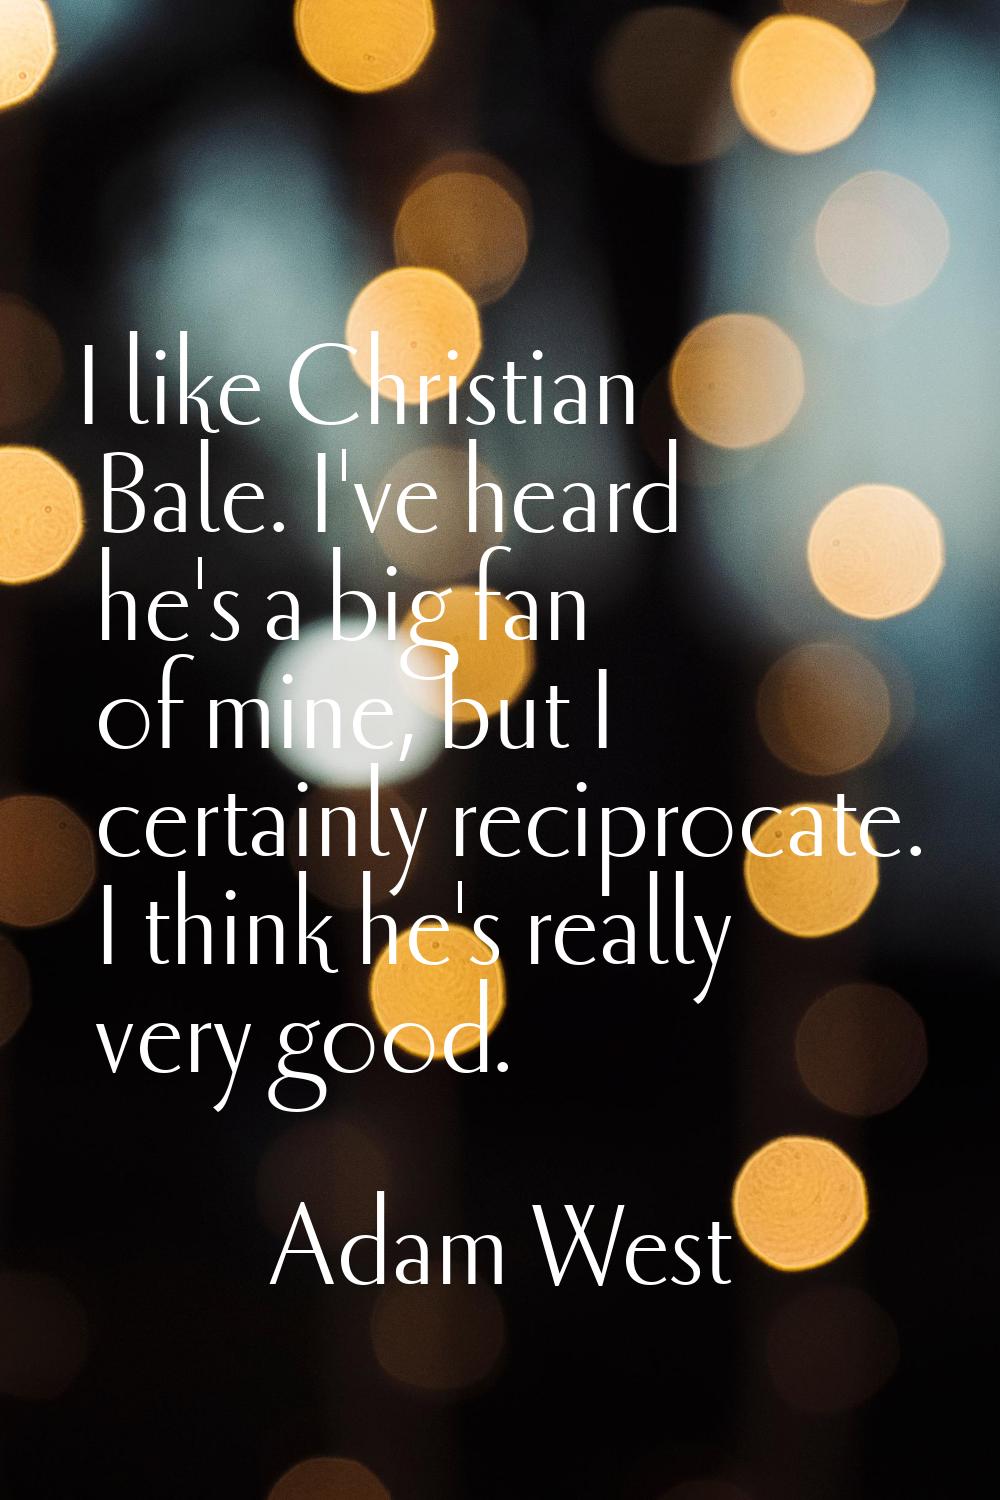 I like Christian Bale. I've heard he's a big fan of mine, but I certainly reciprocate. I think he's